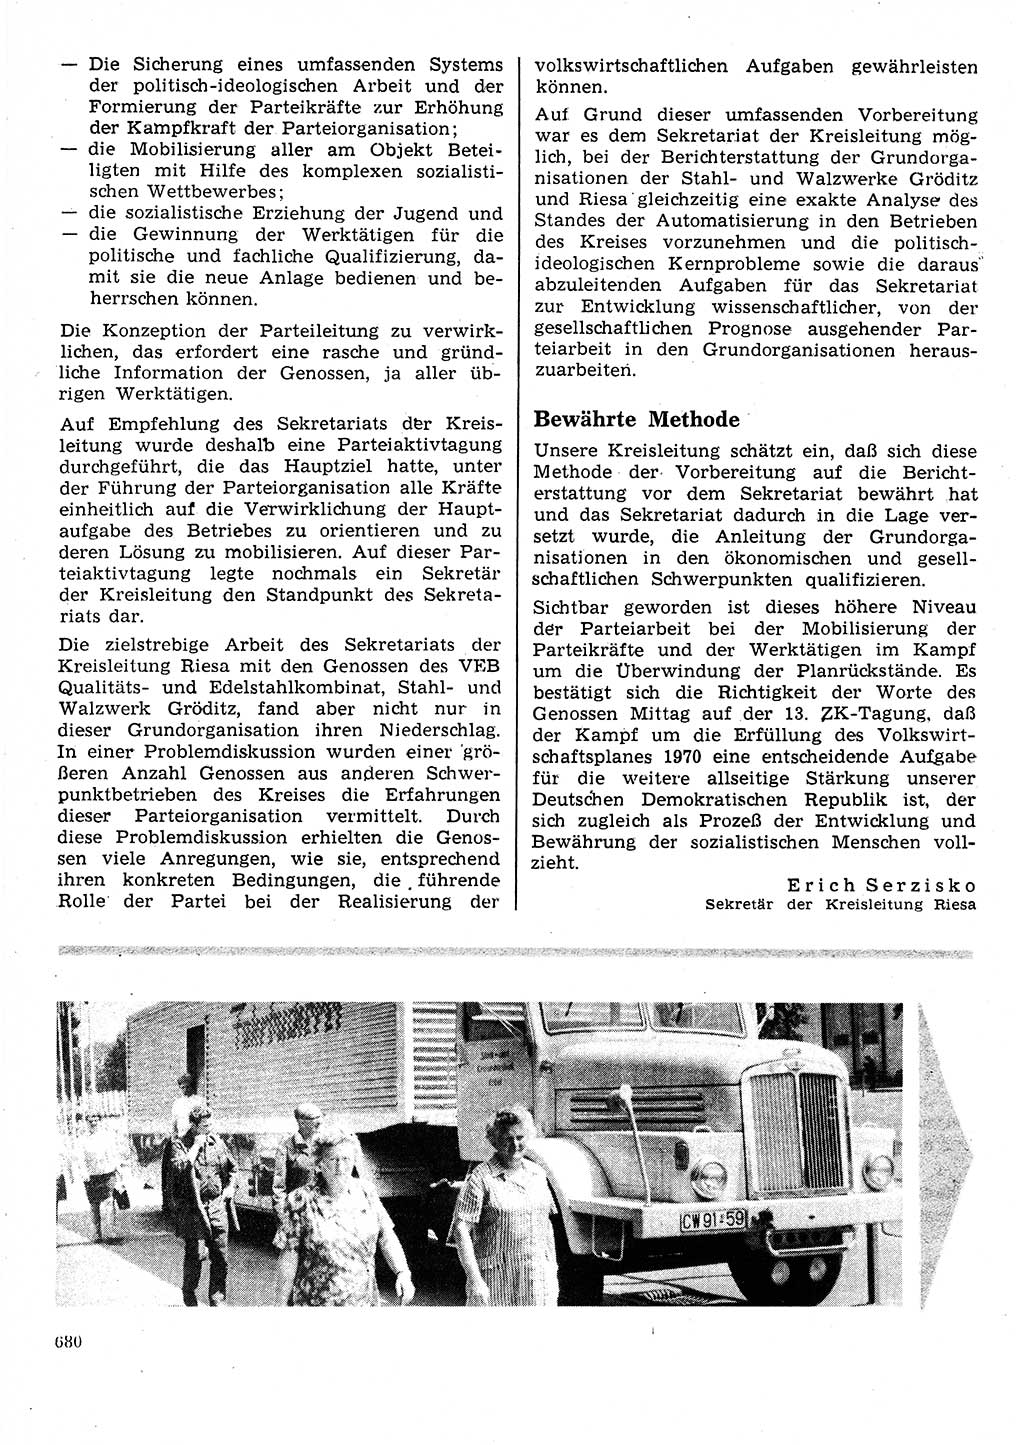 Neuer Weg (NW), Organ des Zentralkomitees (ZK) der SED (Sozialistische Einheitspartei Deutschlands) für Fragen des Parteilebens, 25. Jahrgang [Deutsche Demokratische Republik (DDR)] 1970, Seite 680 (NW ZK SED DDR 1970, S. 680)